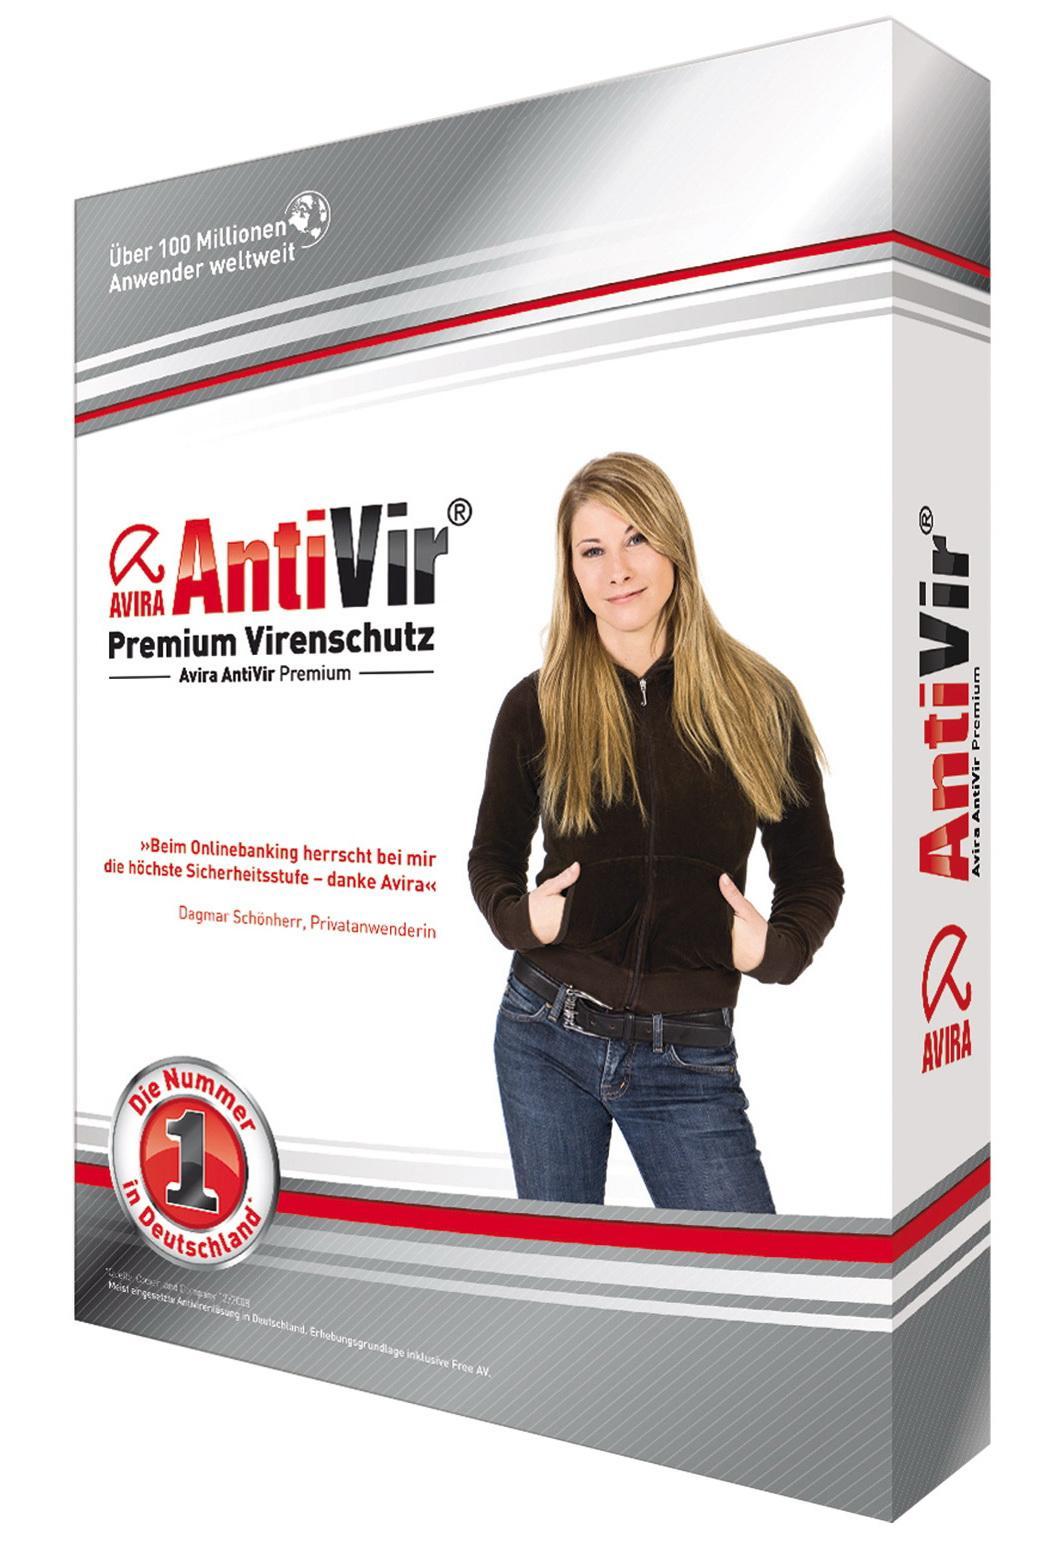 Avira AntiVir Premium 10.0.0.131 Rus + ключ key скачать бесплатно - Авира Премиум 10